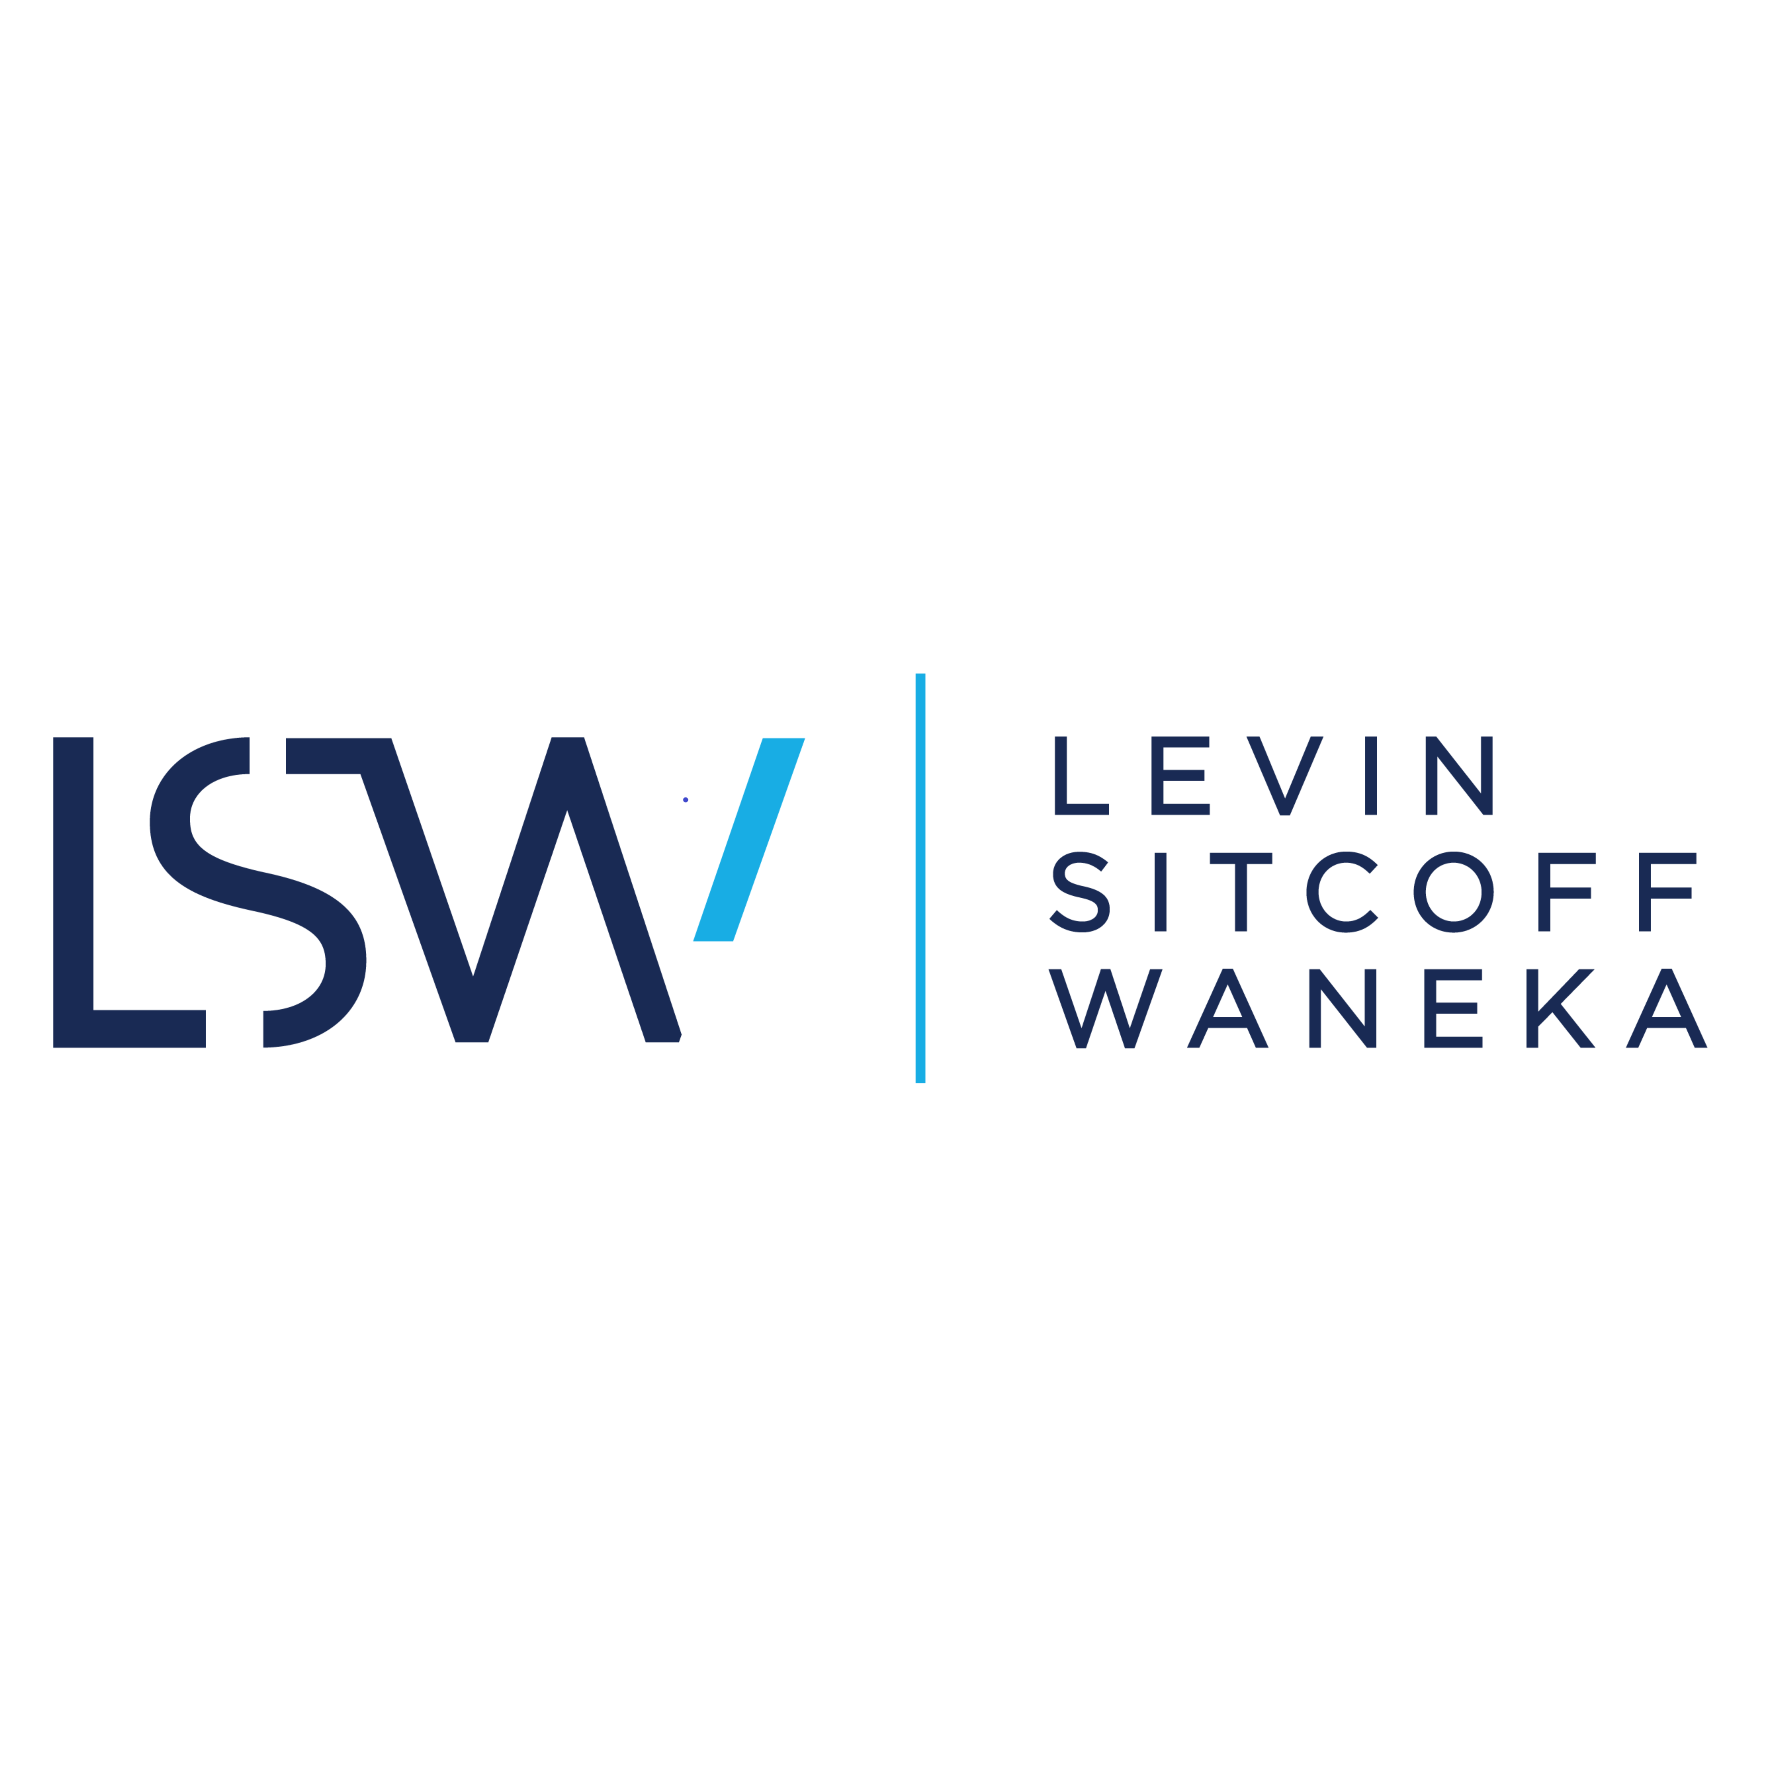 Levin Sitcoff Waneka - Denver, CO 80203 - (303)575-9390 | ShowMeLocal.com